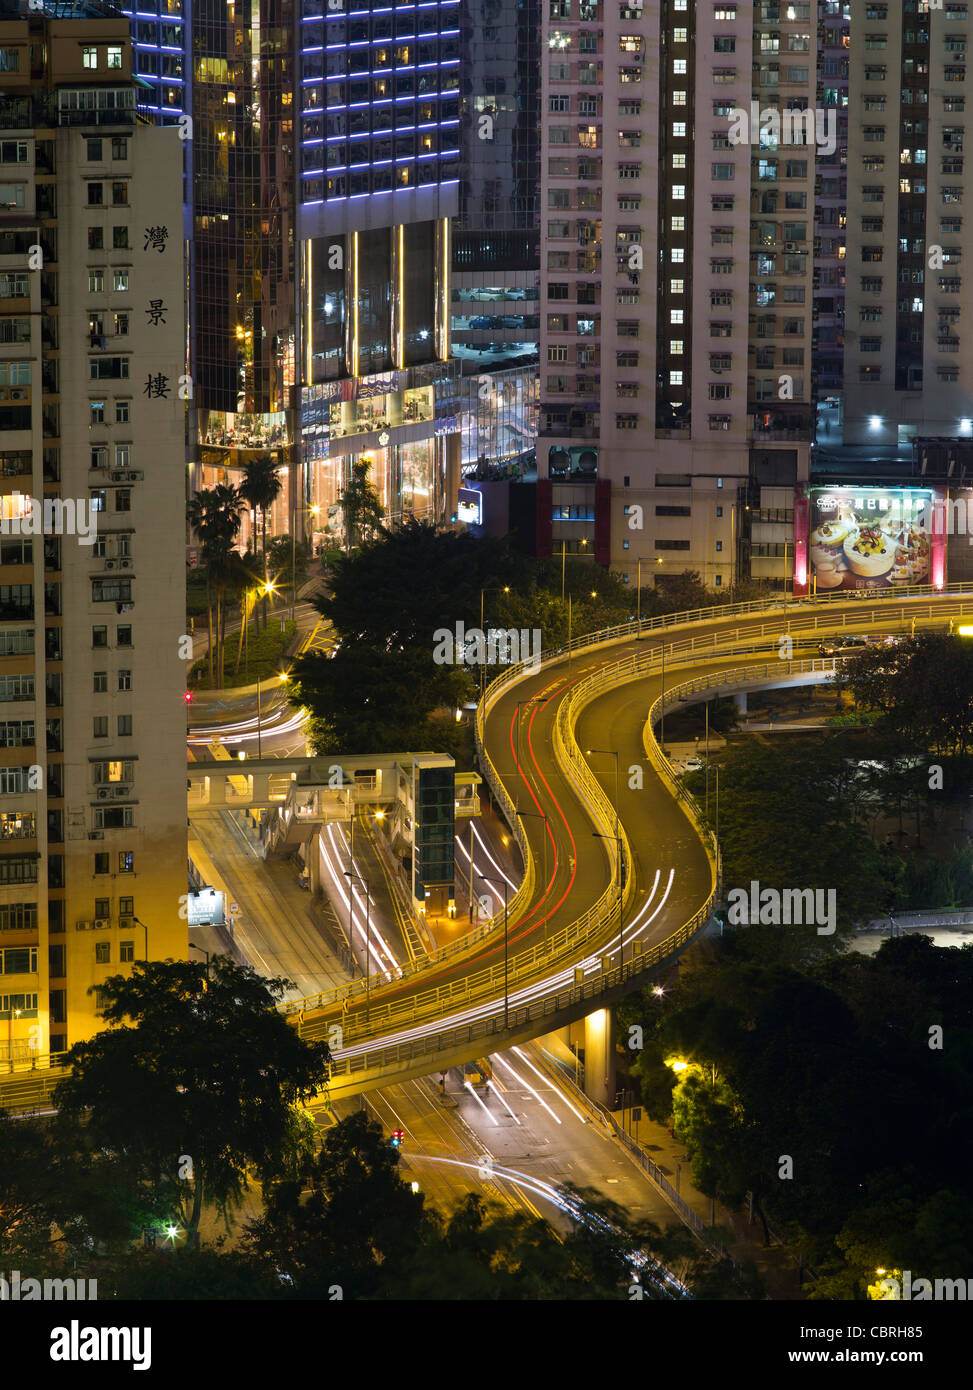 dh CAUSEWAY BAY HONG KONG City feux route et autoponts gratte-ciel bâtiments trafic nuit routes autoroute moderne déserte Banque D'Images